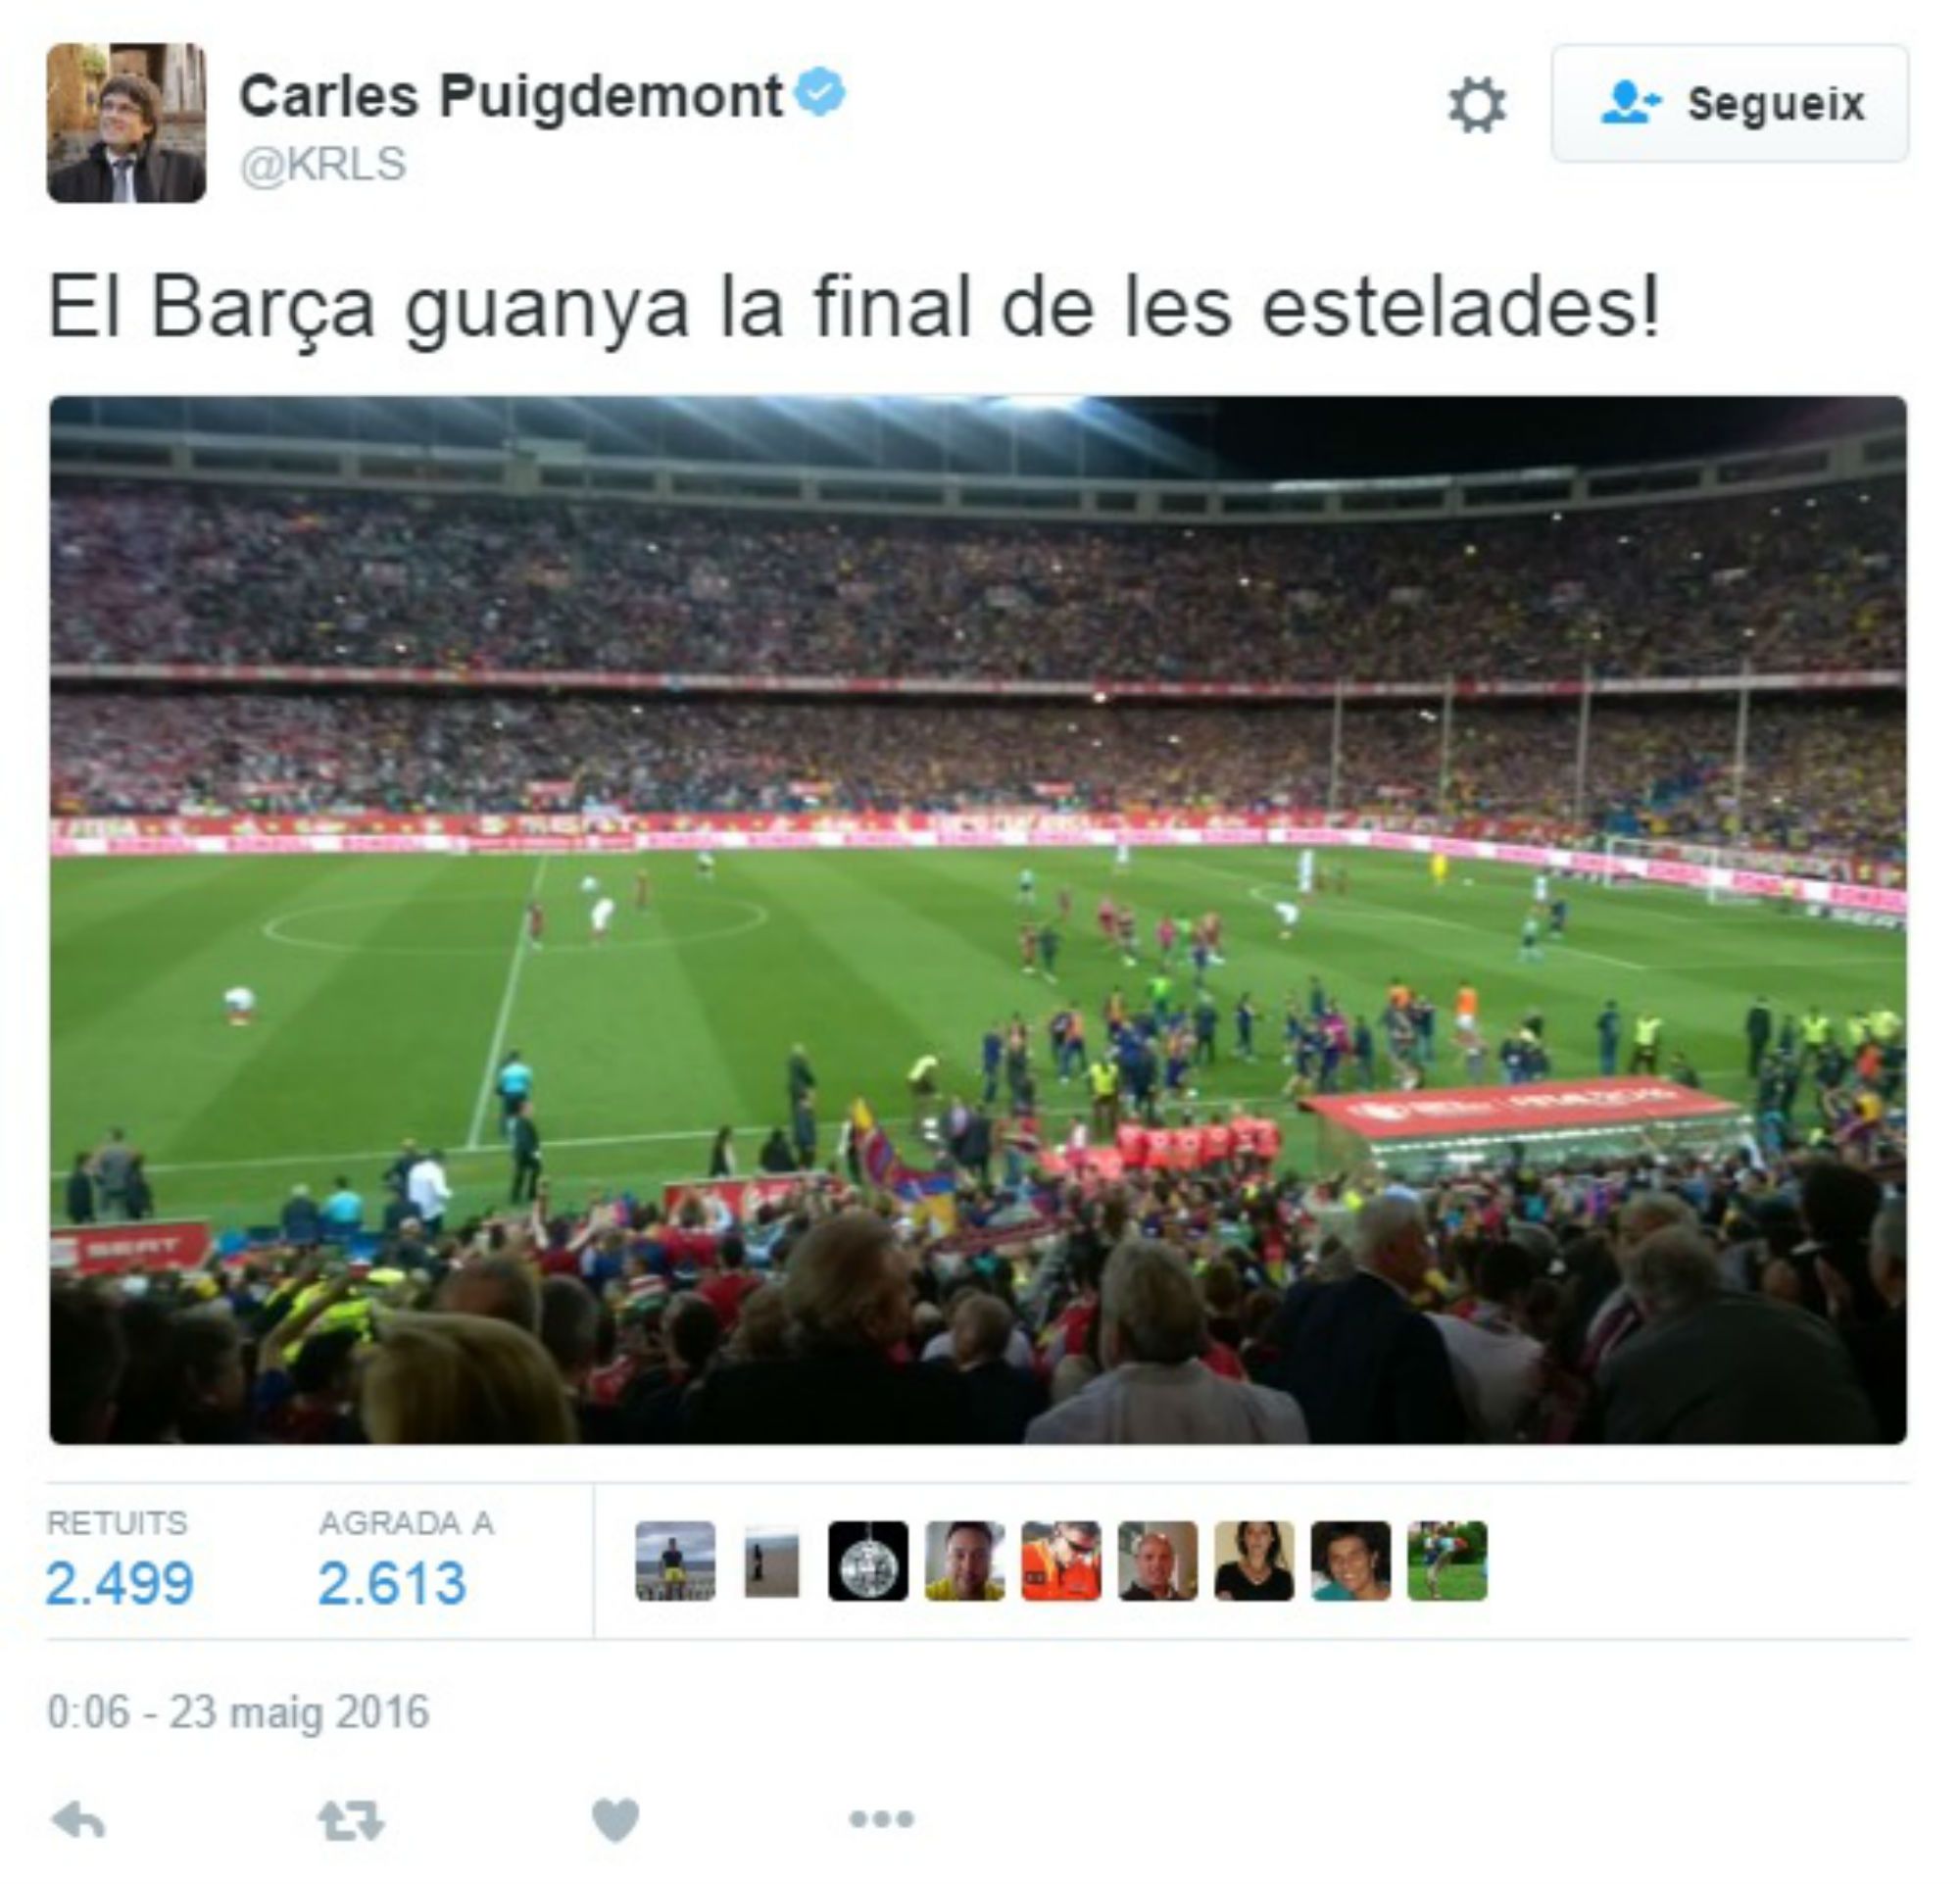 Un tuit de Puigdemont sobre "la final de les estelades" crea polèmica a la xarxa